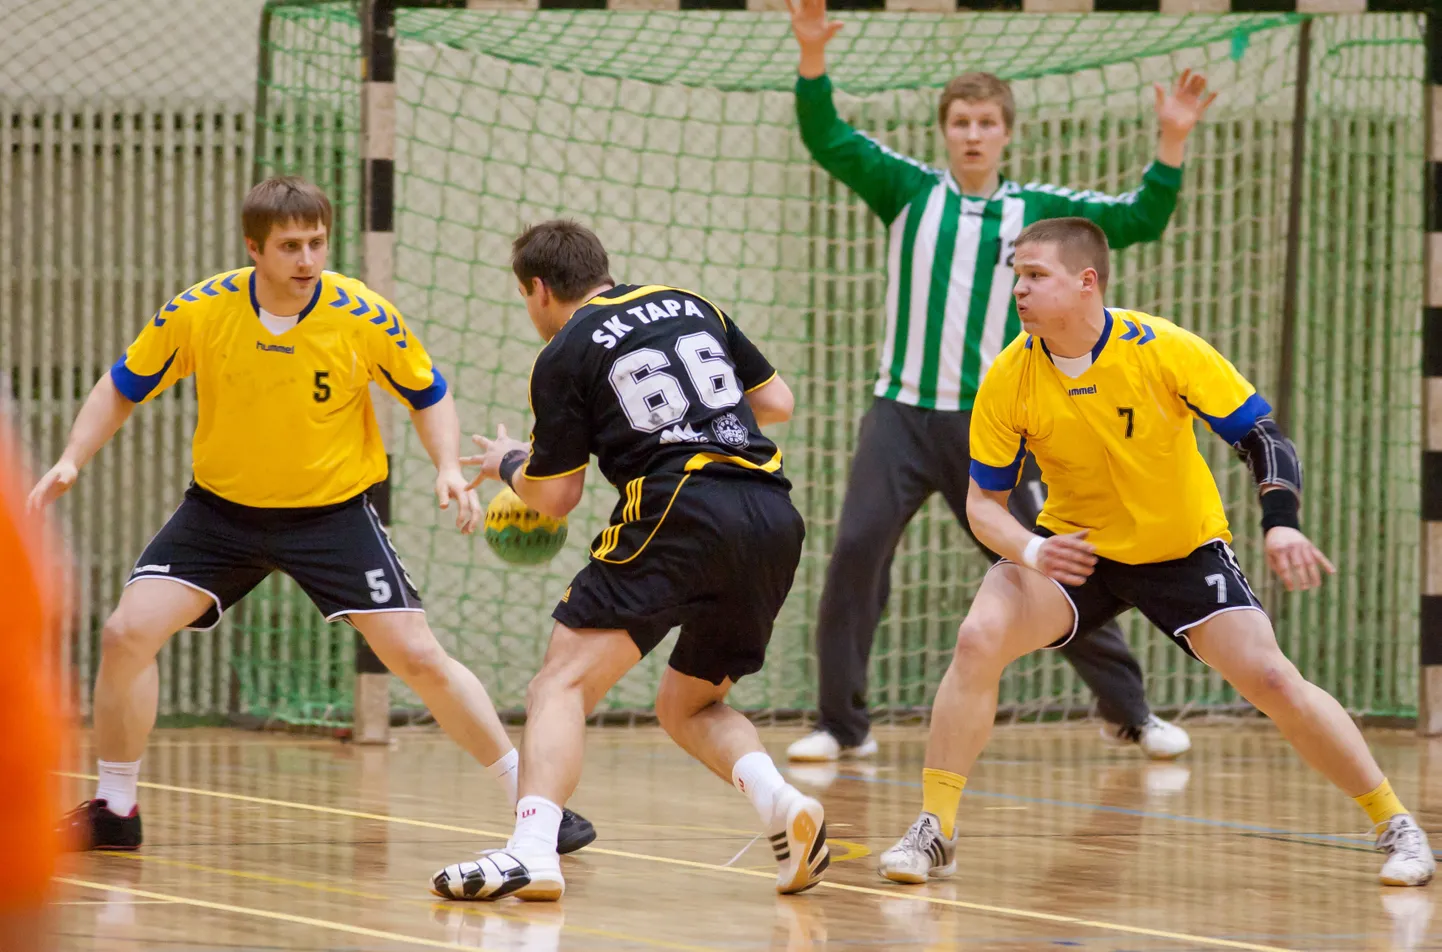 Eesti käsipalli meistrivõistlustel algab täna kahe mänguga seeria, milles selgub pronksmedalist.